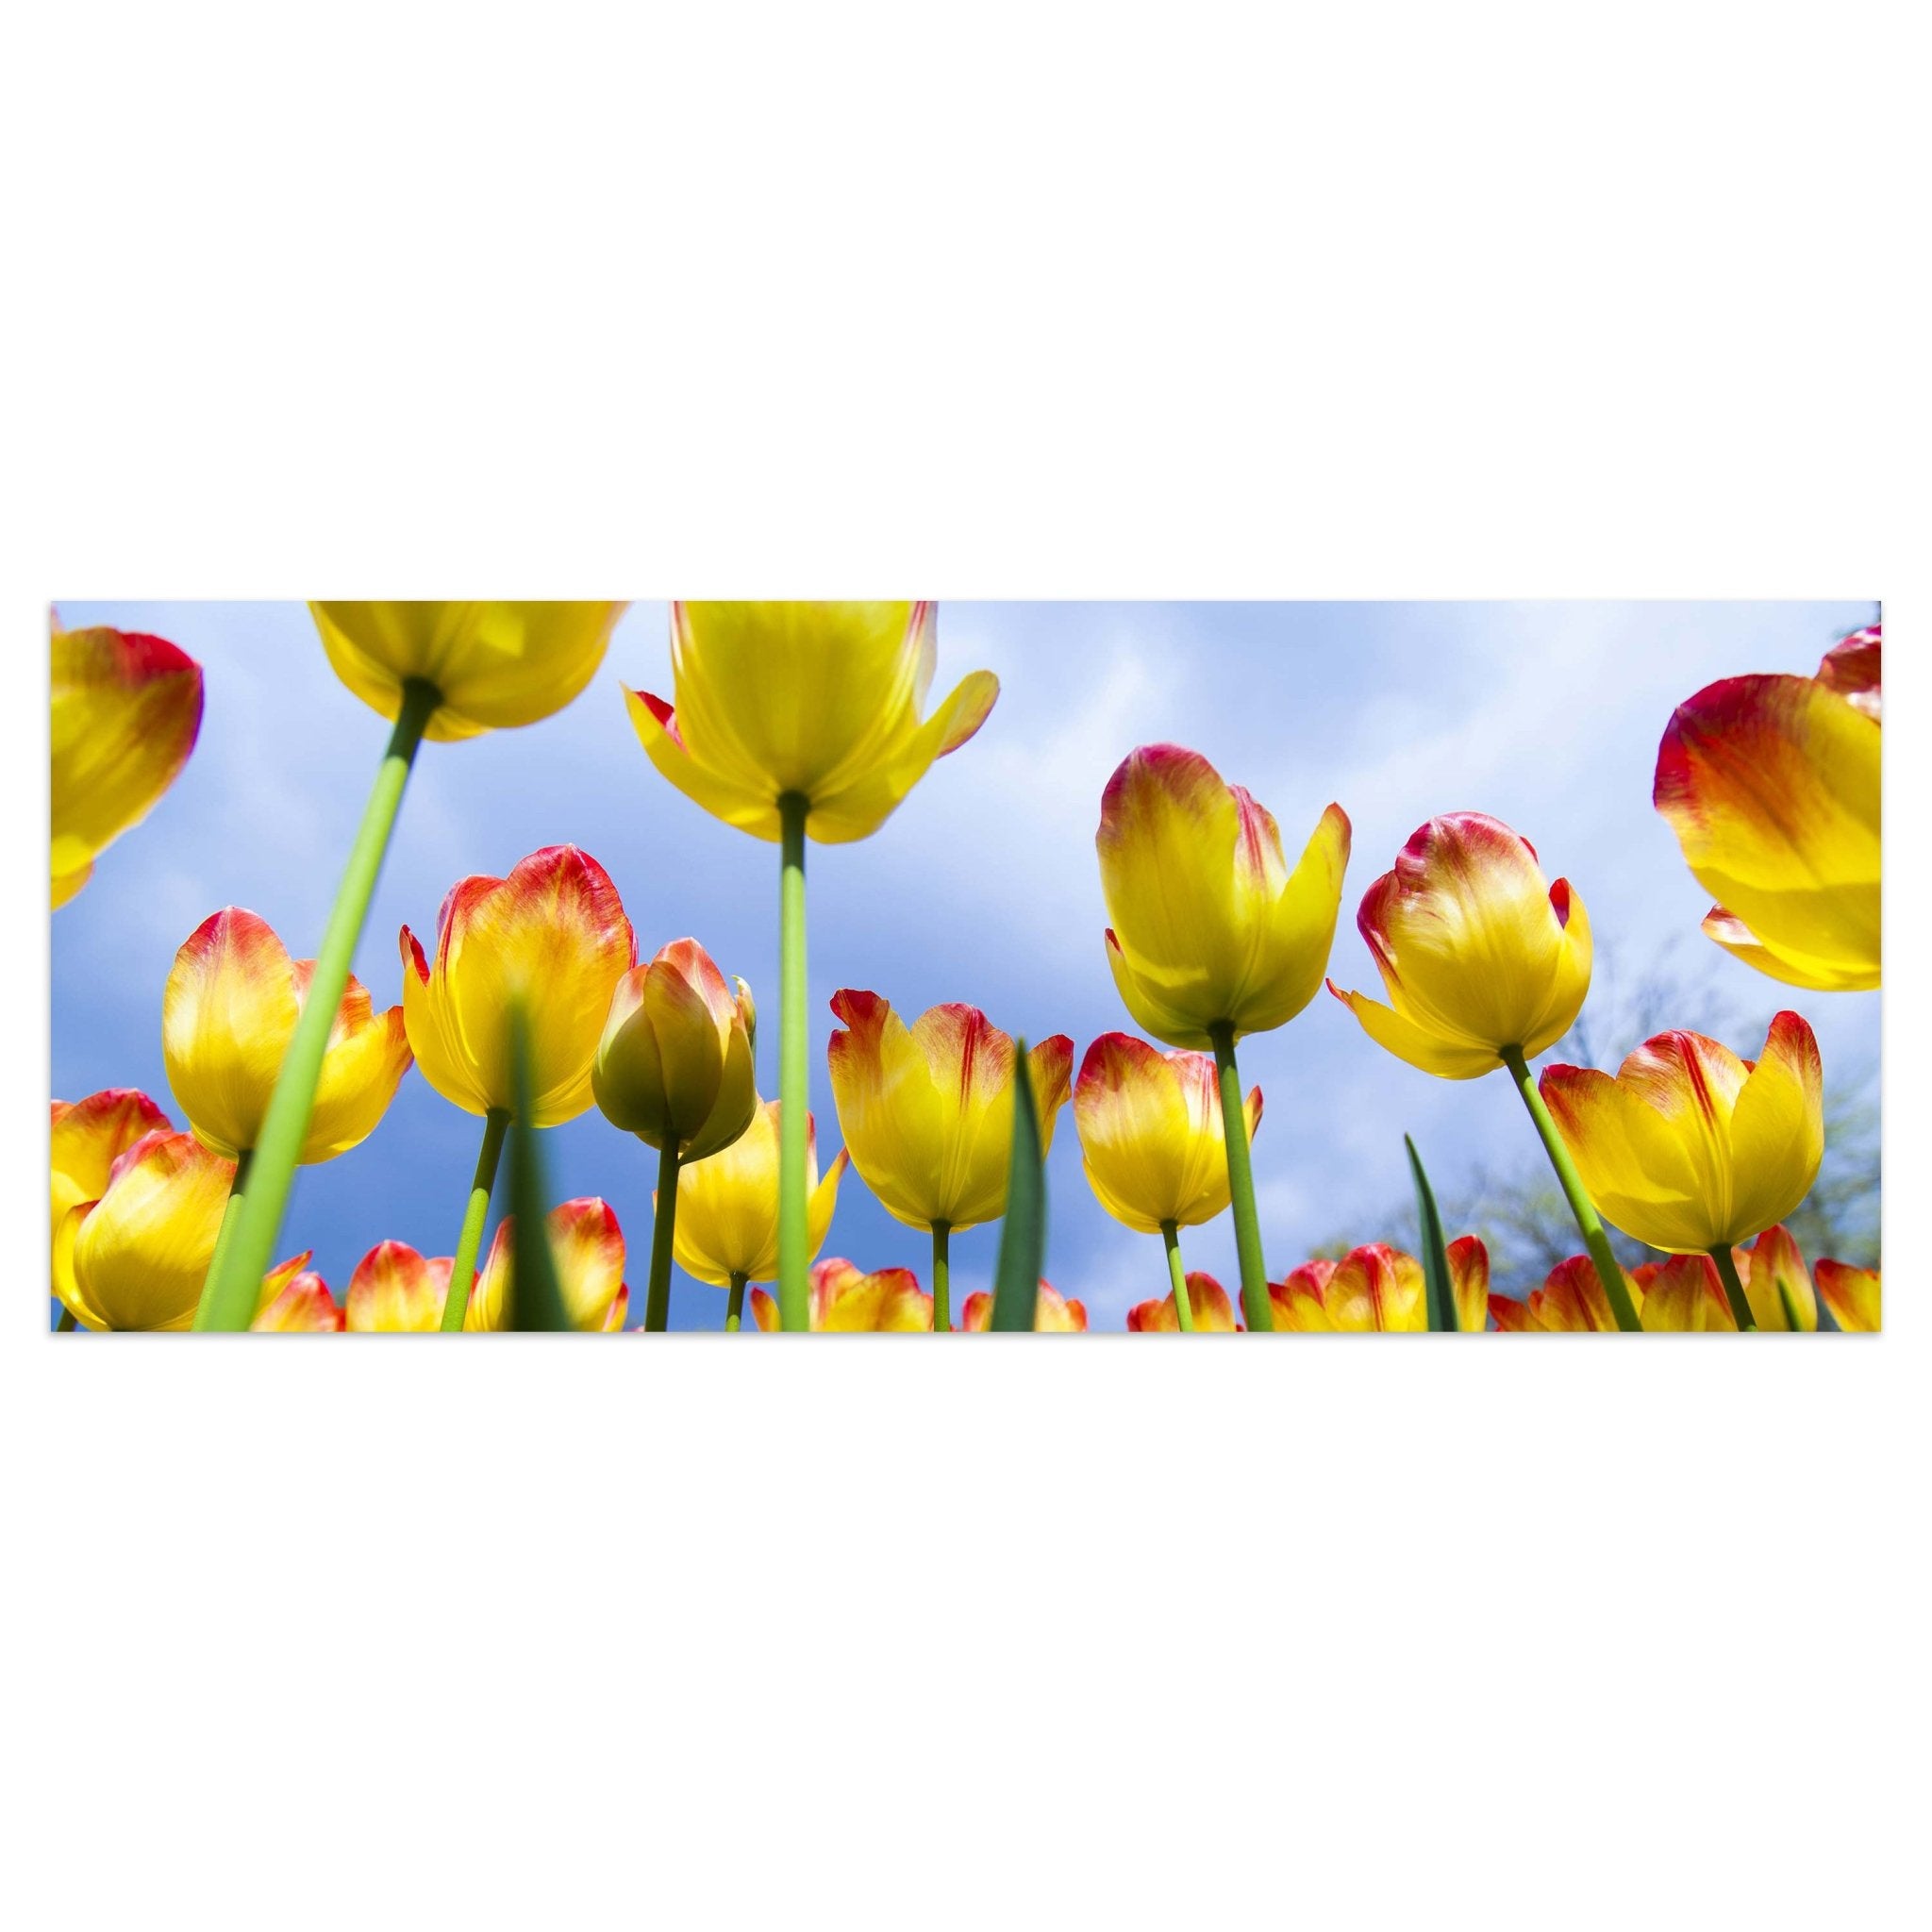 Leinwandbild Tulpen M1029 kaufen - Bild 1